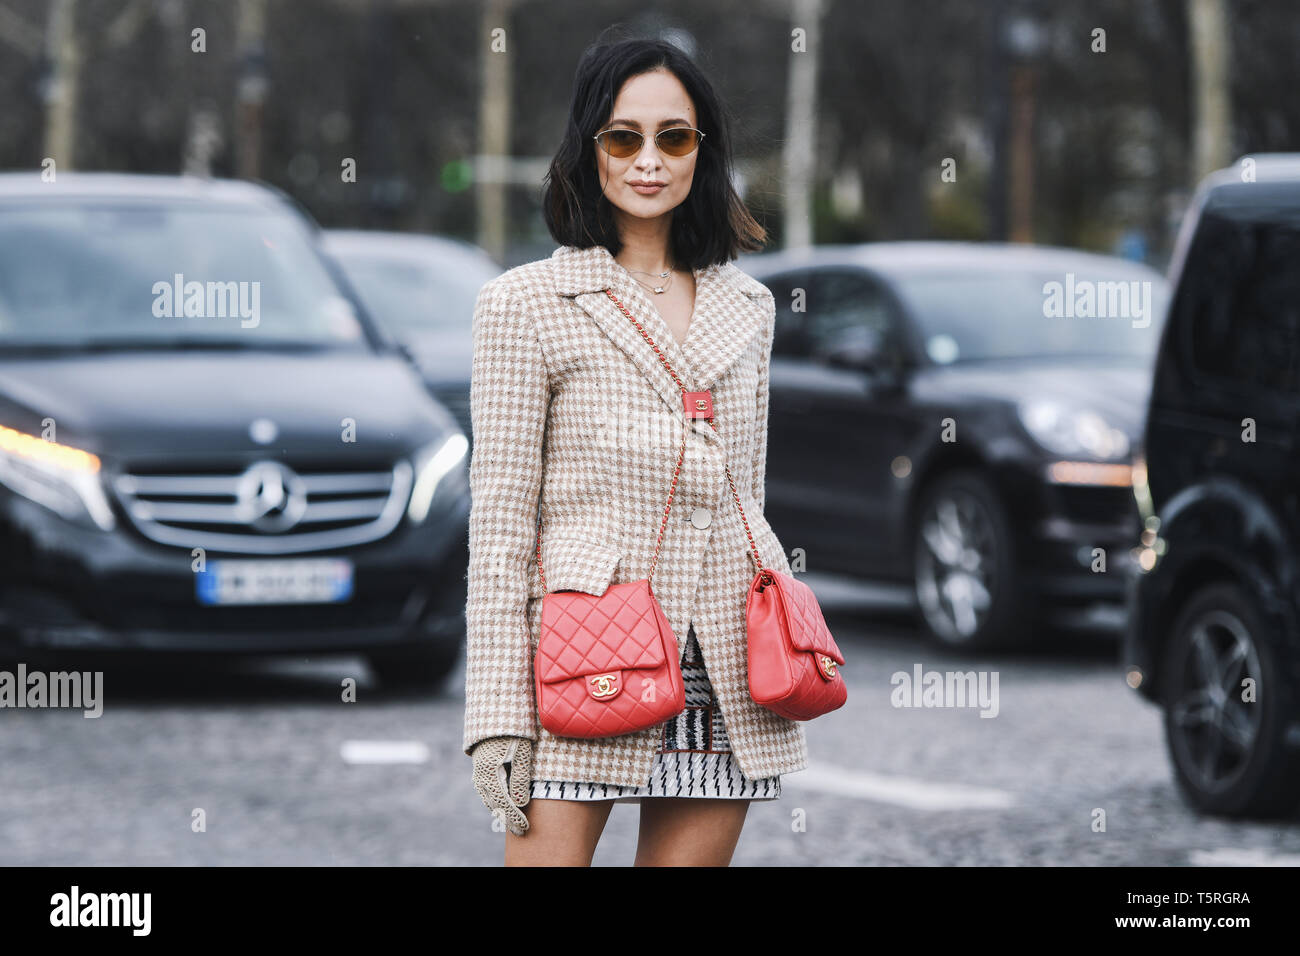 Parigi, Francia - 5 Marzo 2019: Street style - donna che indossa Blazer giacca rossa doppia Chanel borse prima di una sfilata di moda durante la settimana della moda di Parigi - PF Foto Stock